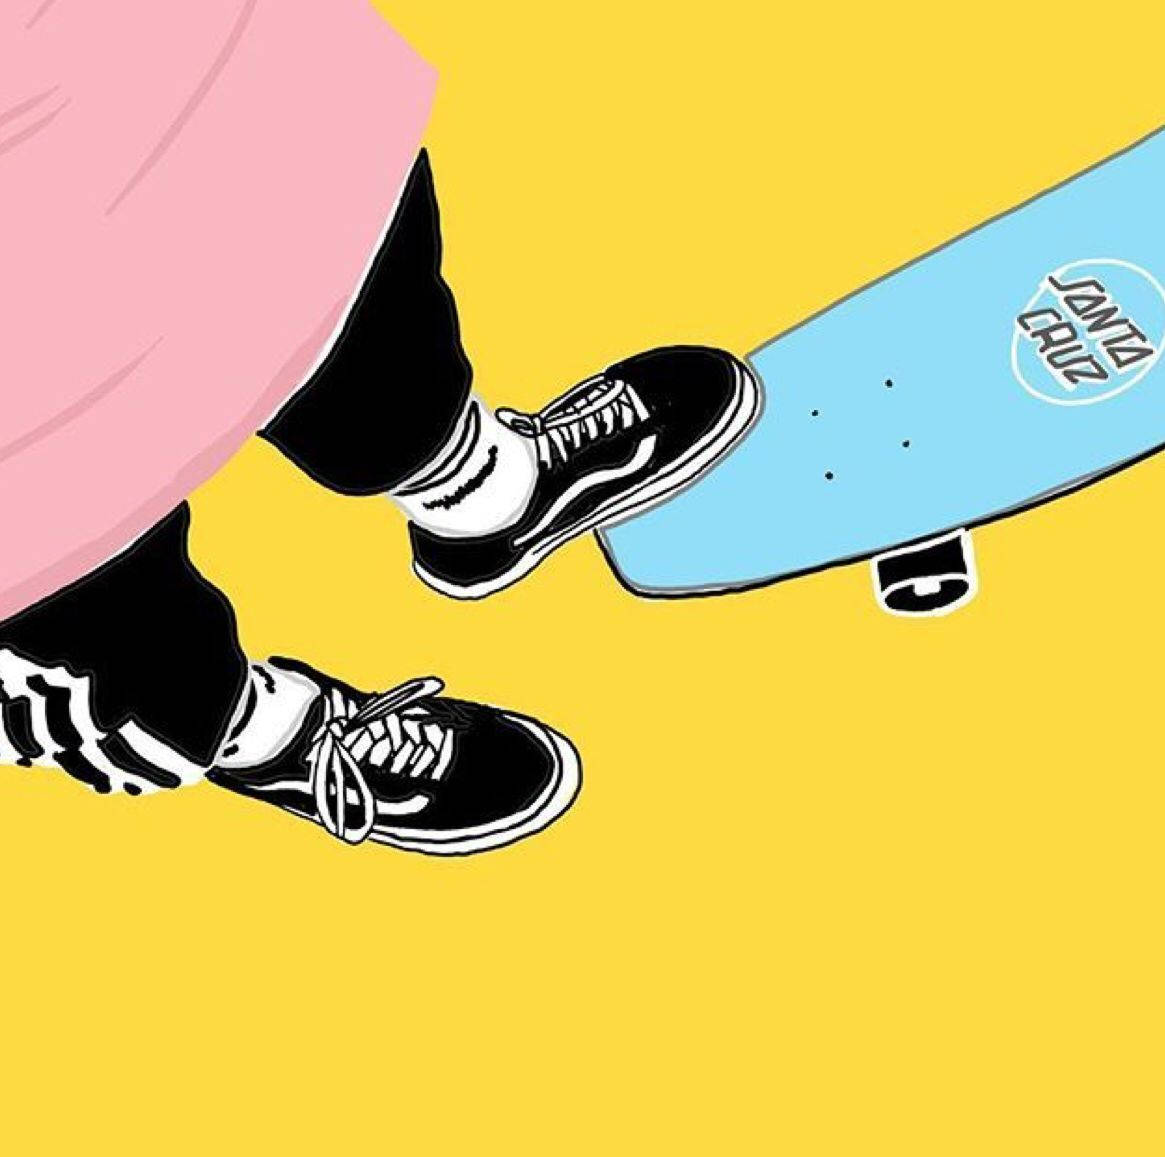 Free Skateboard Wallpaper Downloads, [200+] Skateboard Wallpapers for FREE  